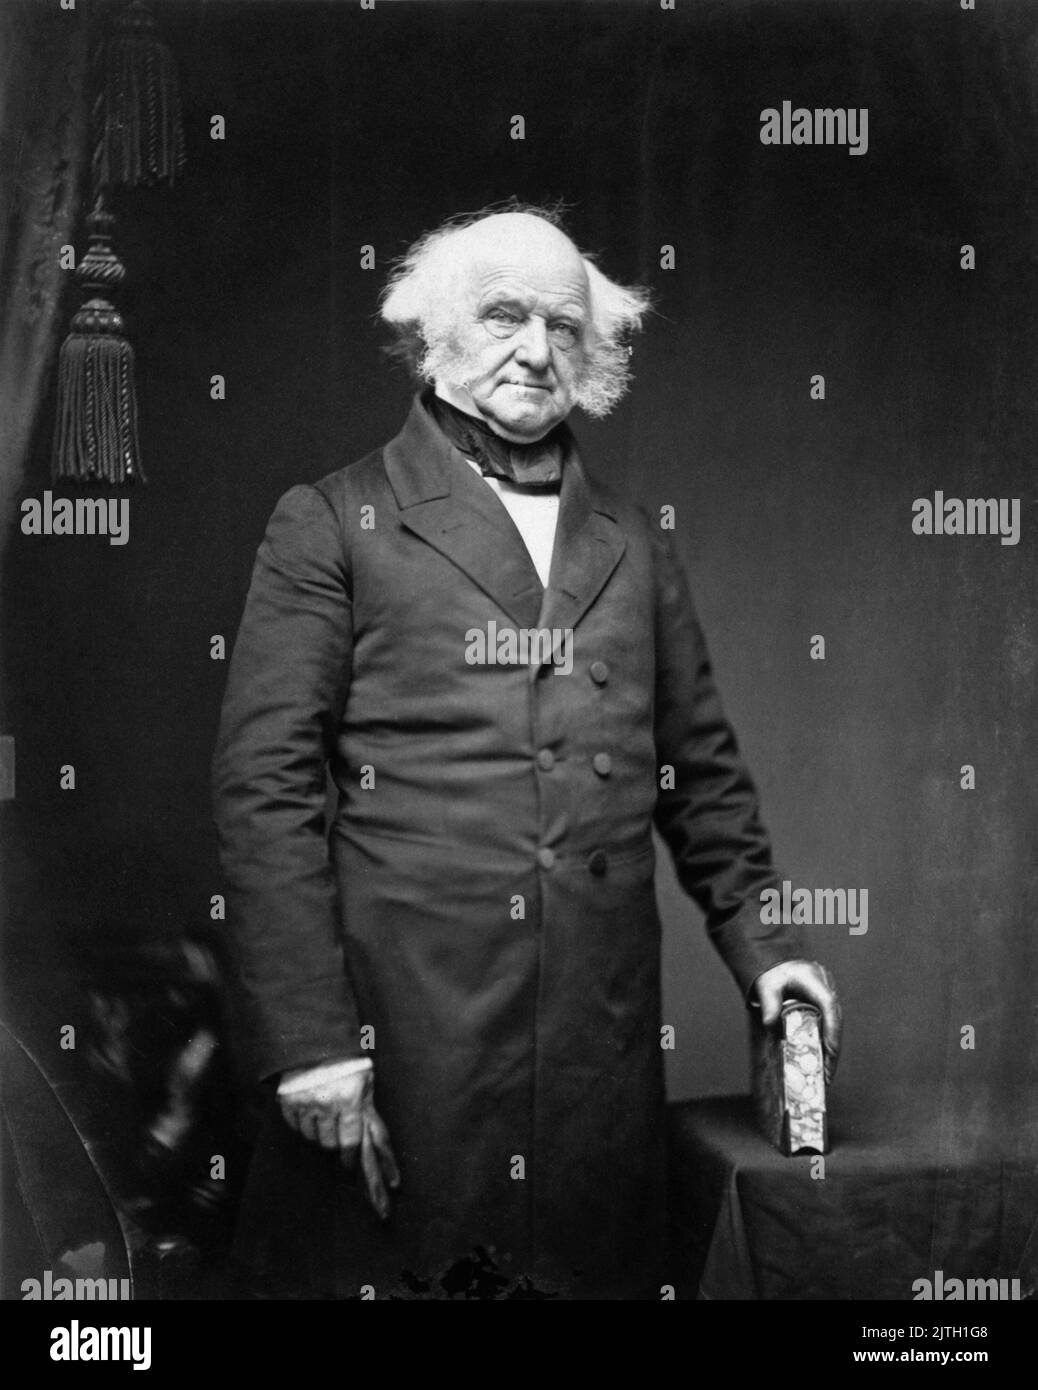 Ein Foto von Martin Van Buren aus dem Jahr 1855 von Mathew Brady. Martin Van Buren war der achte Präsident der USA und auf diesem Foto war er 73 Jahre alt. Stockfoto